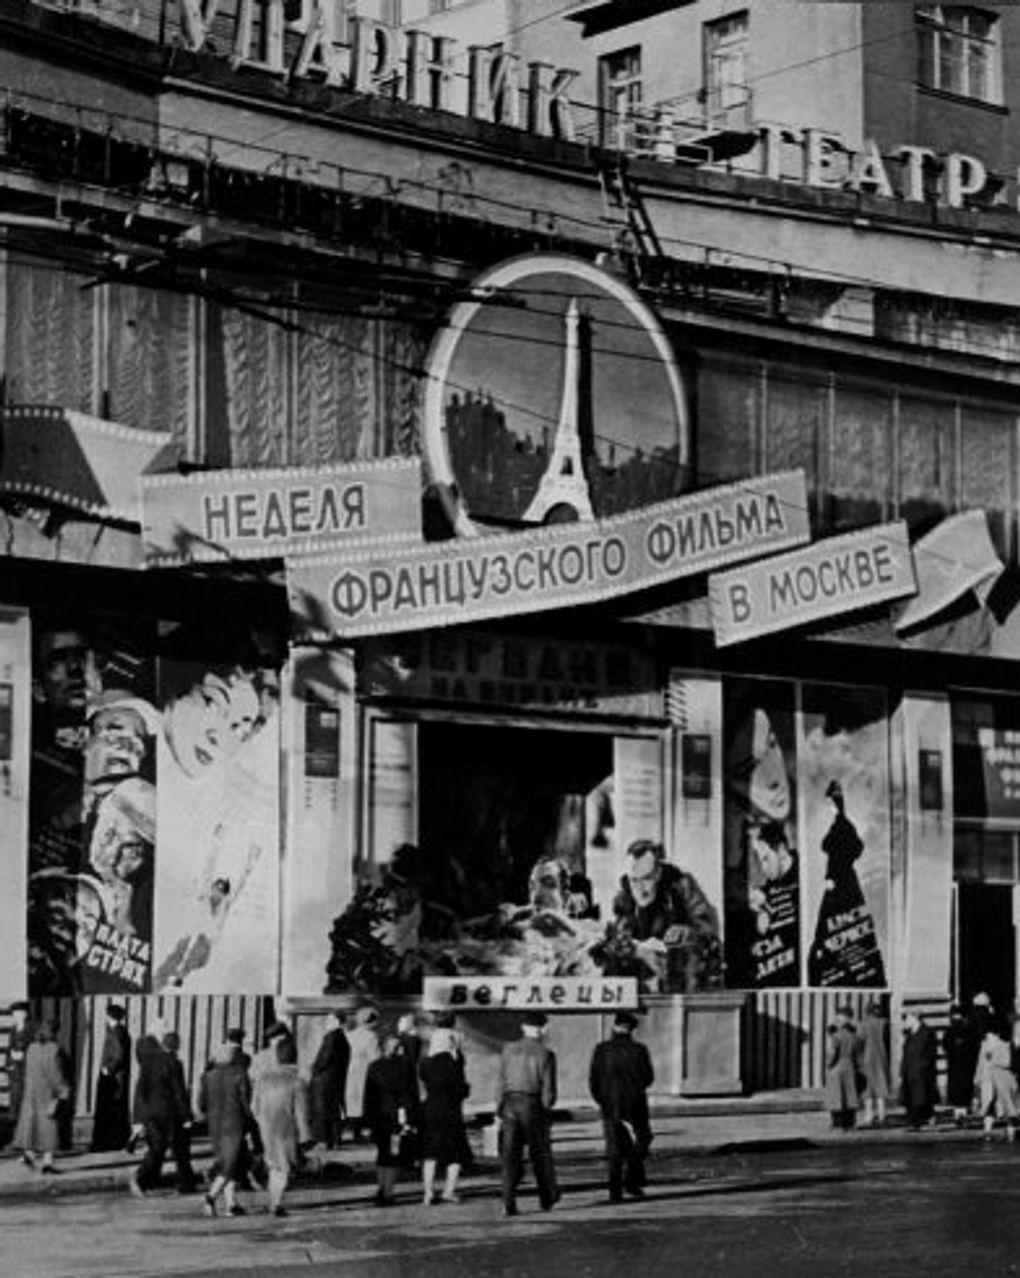 Неделя французского фильма. Кинотеатр «Ударник». Москва, 1955 год. Фотография: Борис Трепетов / Музейное объединение «Музей Москвы», Москва